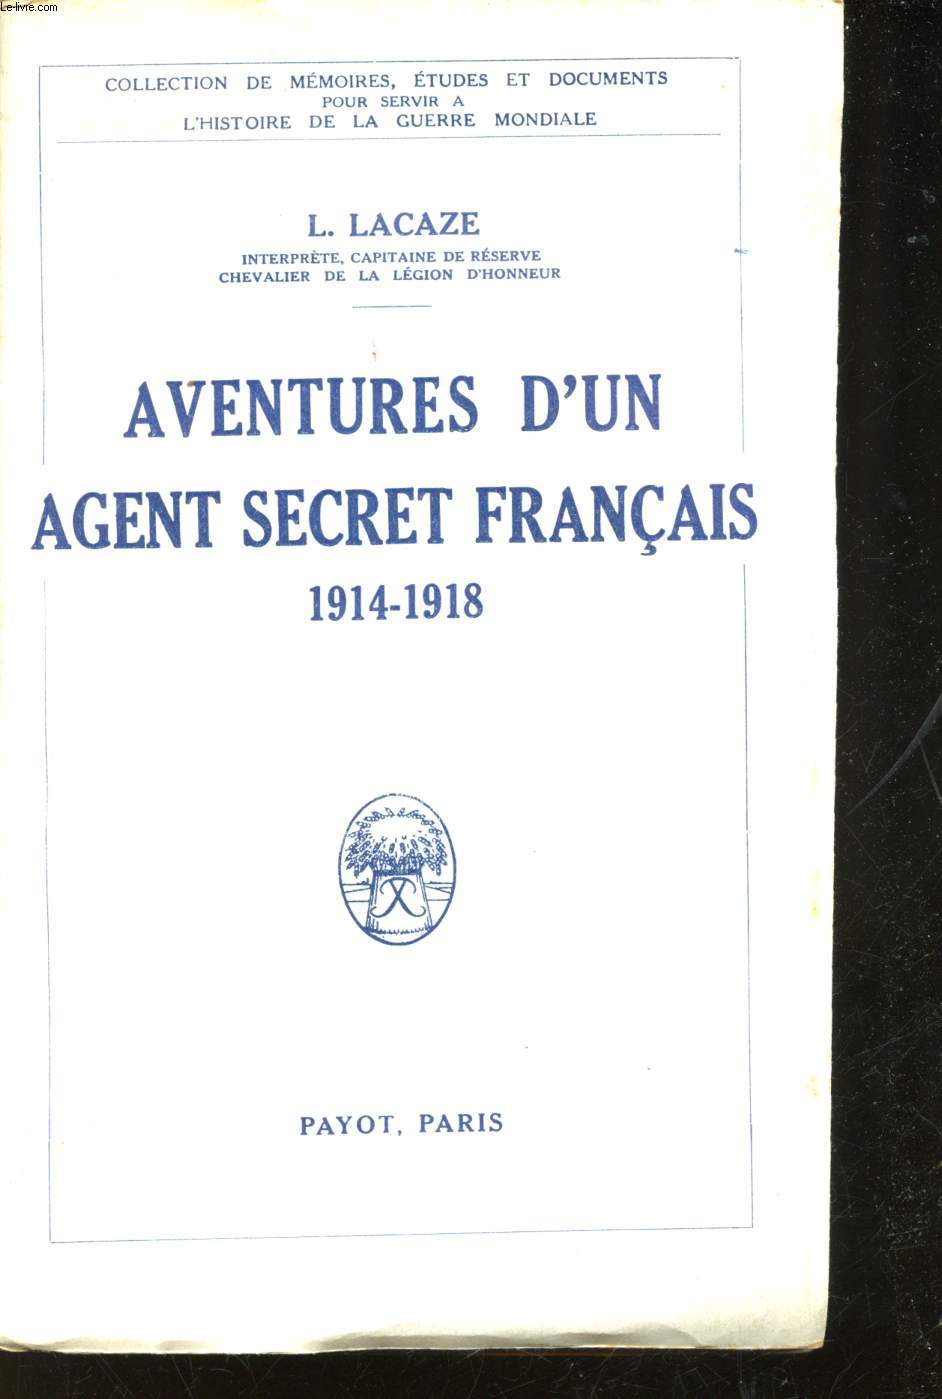 Aventures d'un Agent secret franais 1914-1918.